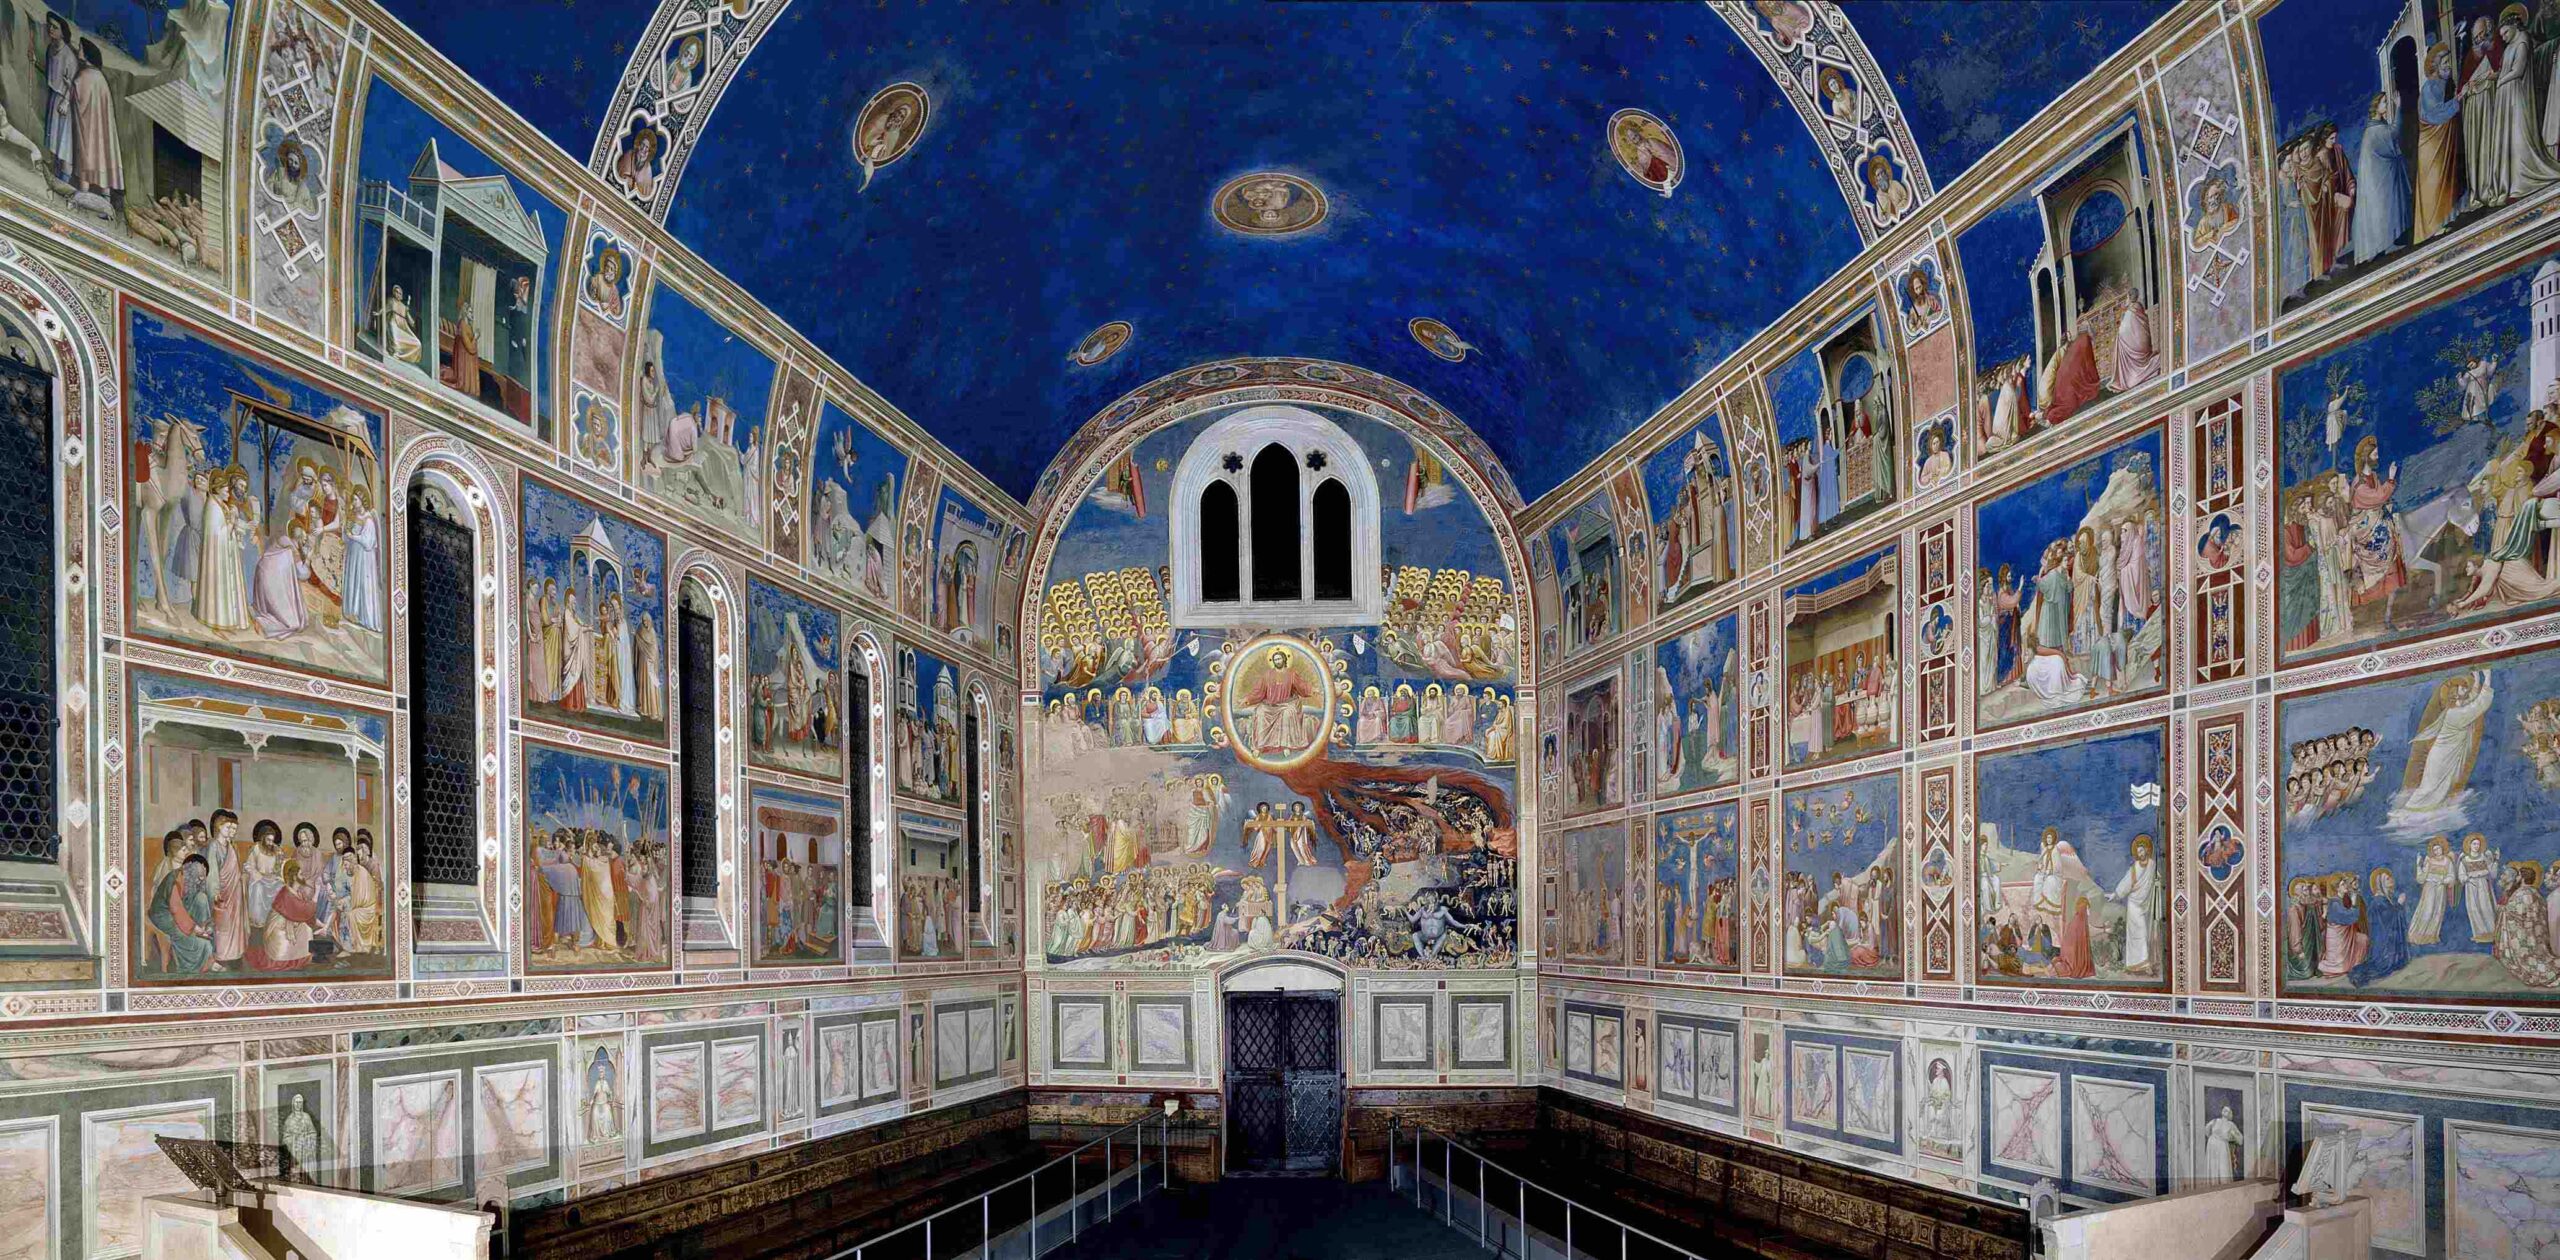 Nuova prospettiva sul capolavoro di Giotto: la Cappella degli Scrovegni in VR a 360°